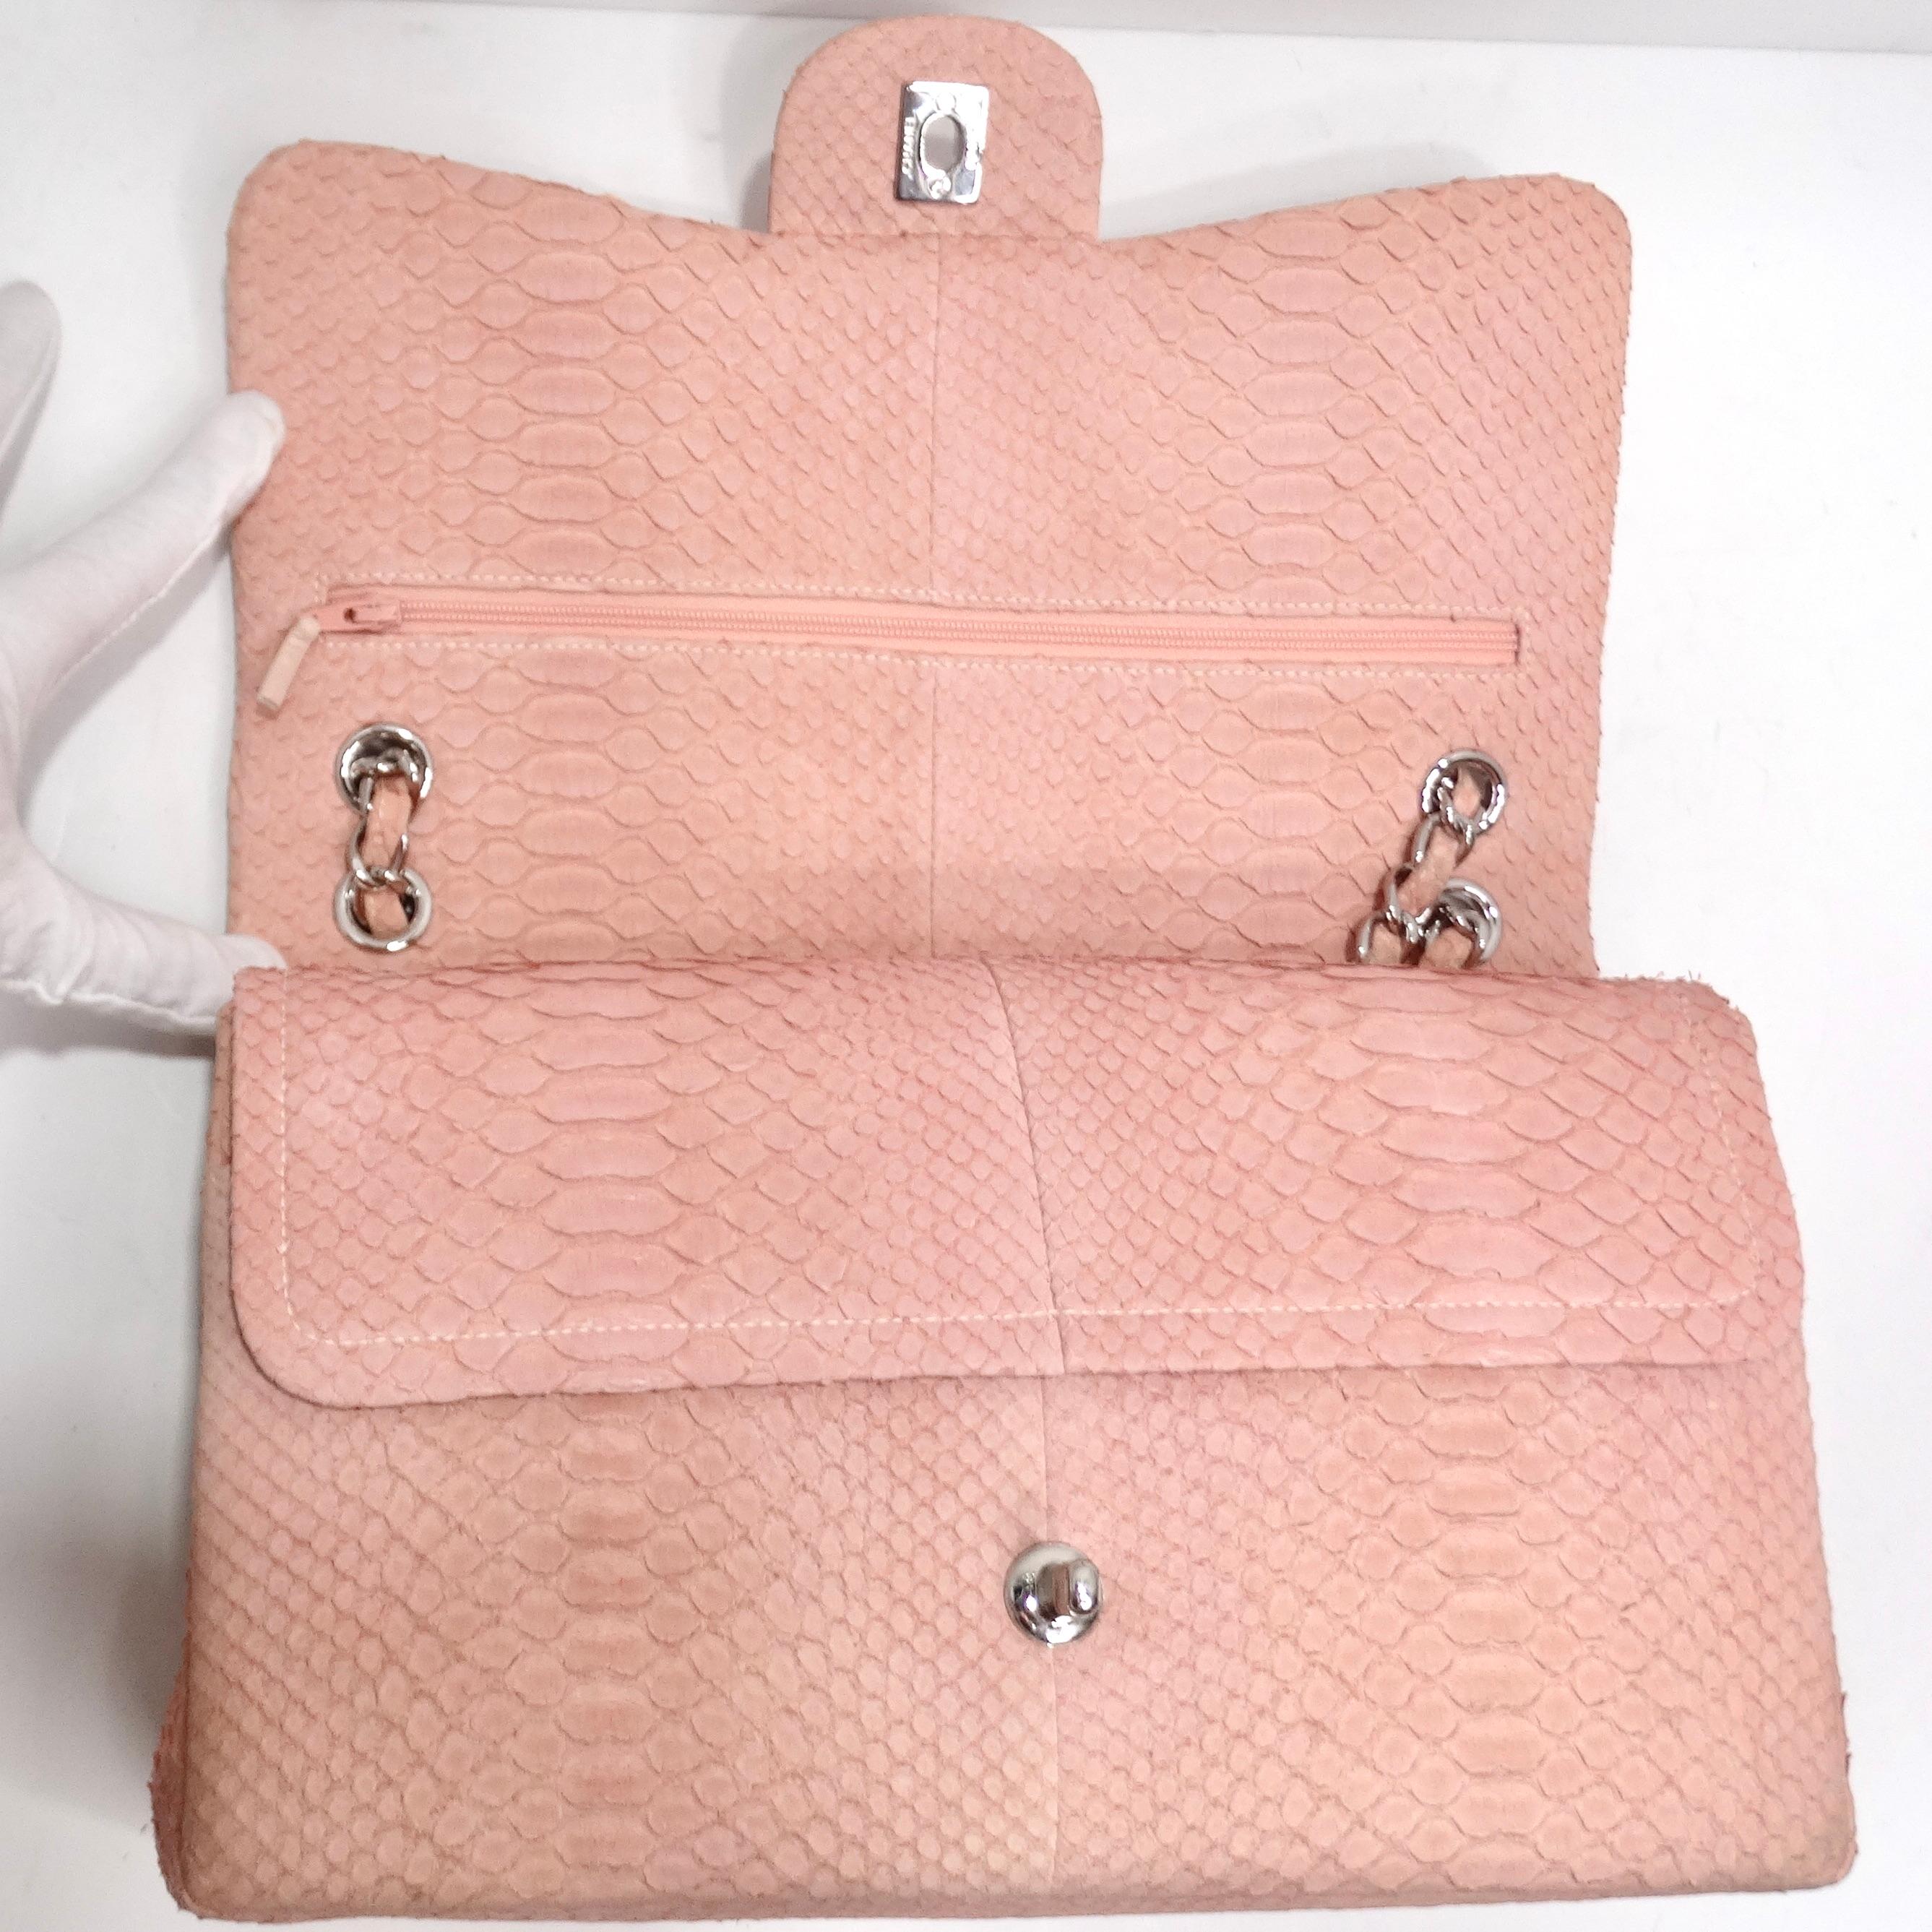 Chanel Pink Python Jumbo Double Flap Handbag For Sale 7